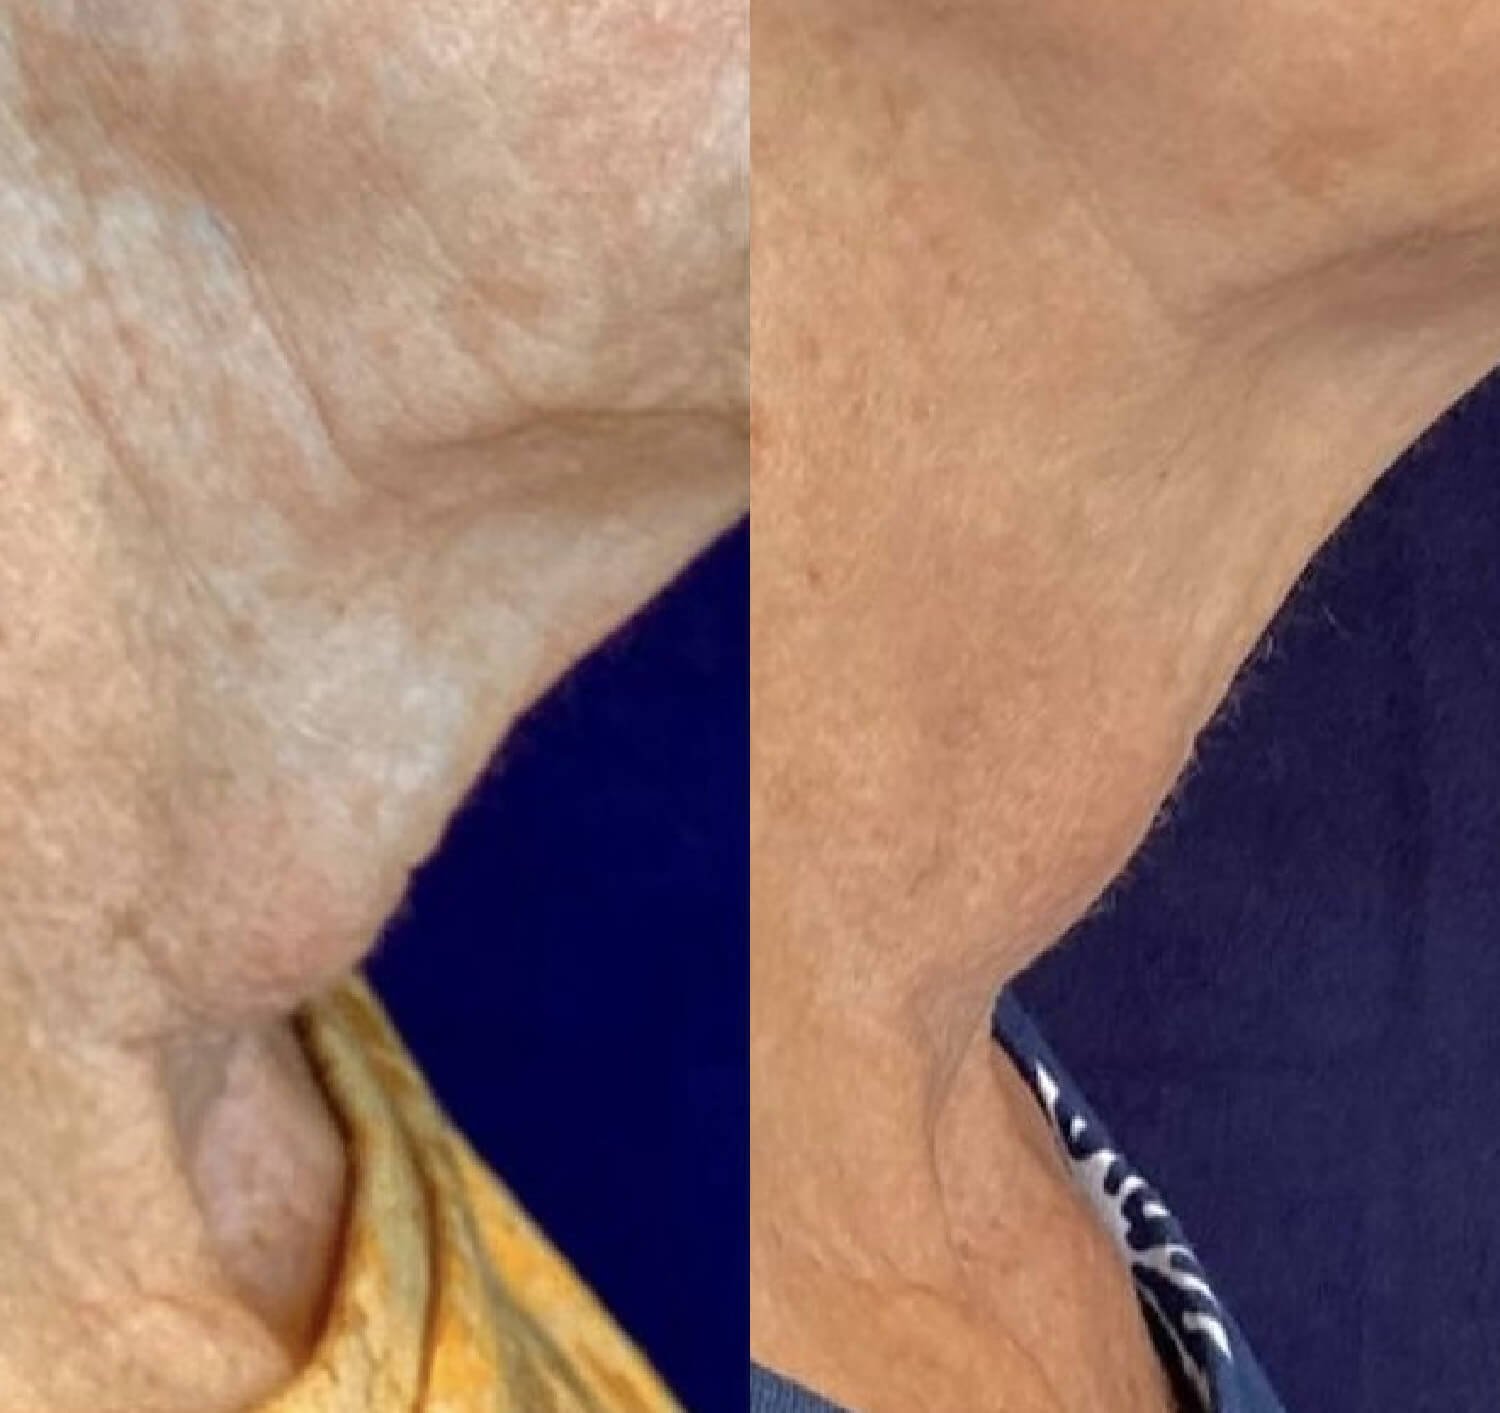 Lisa Azevedo neck rejuvenation before and after.jpg